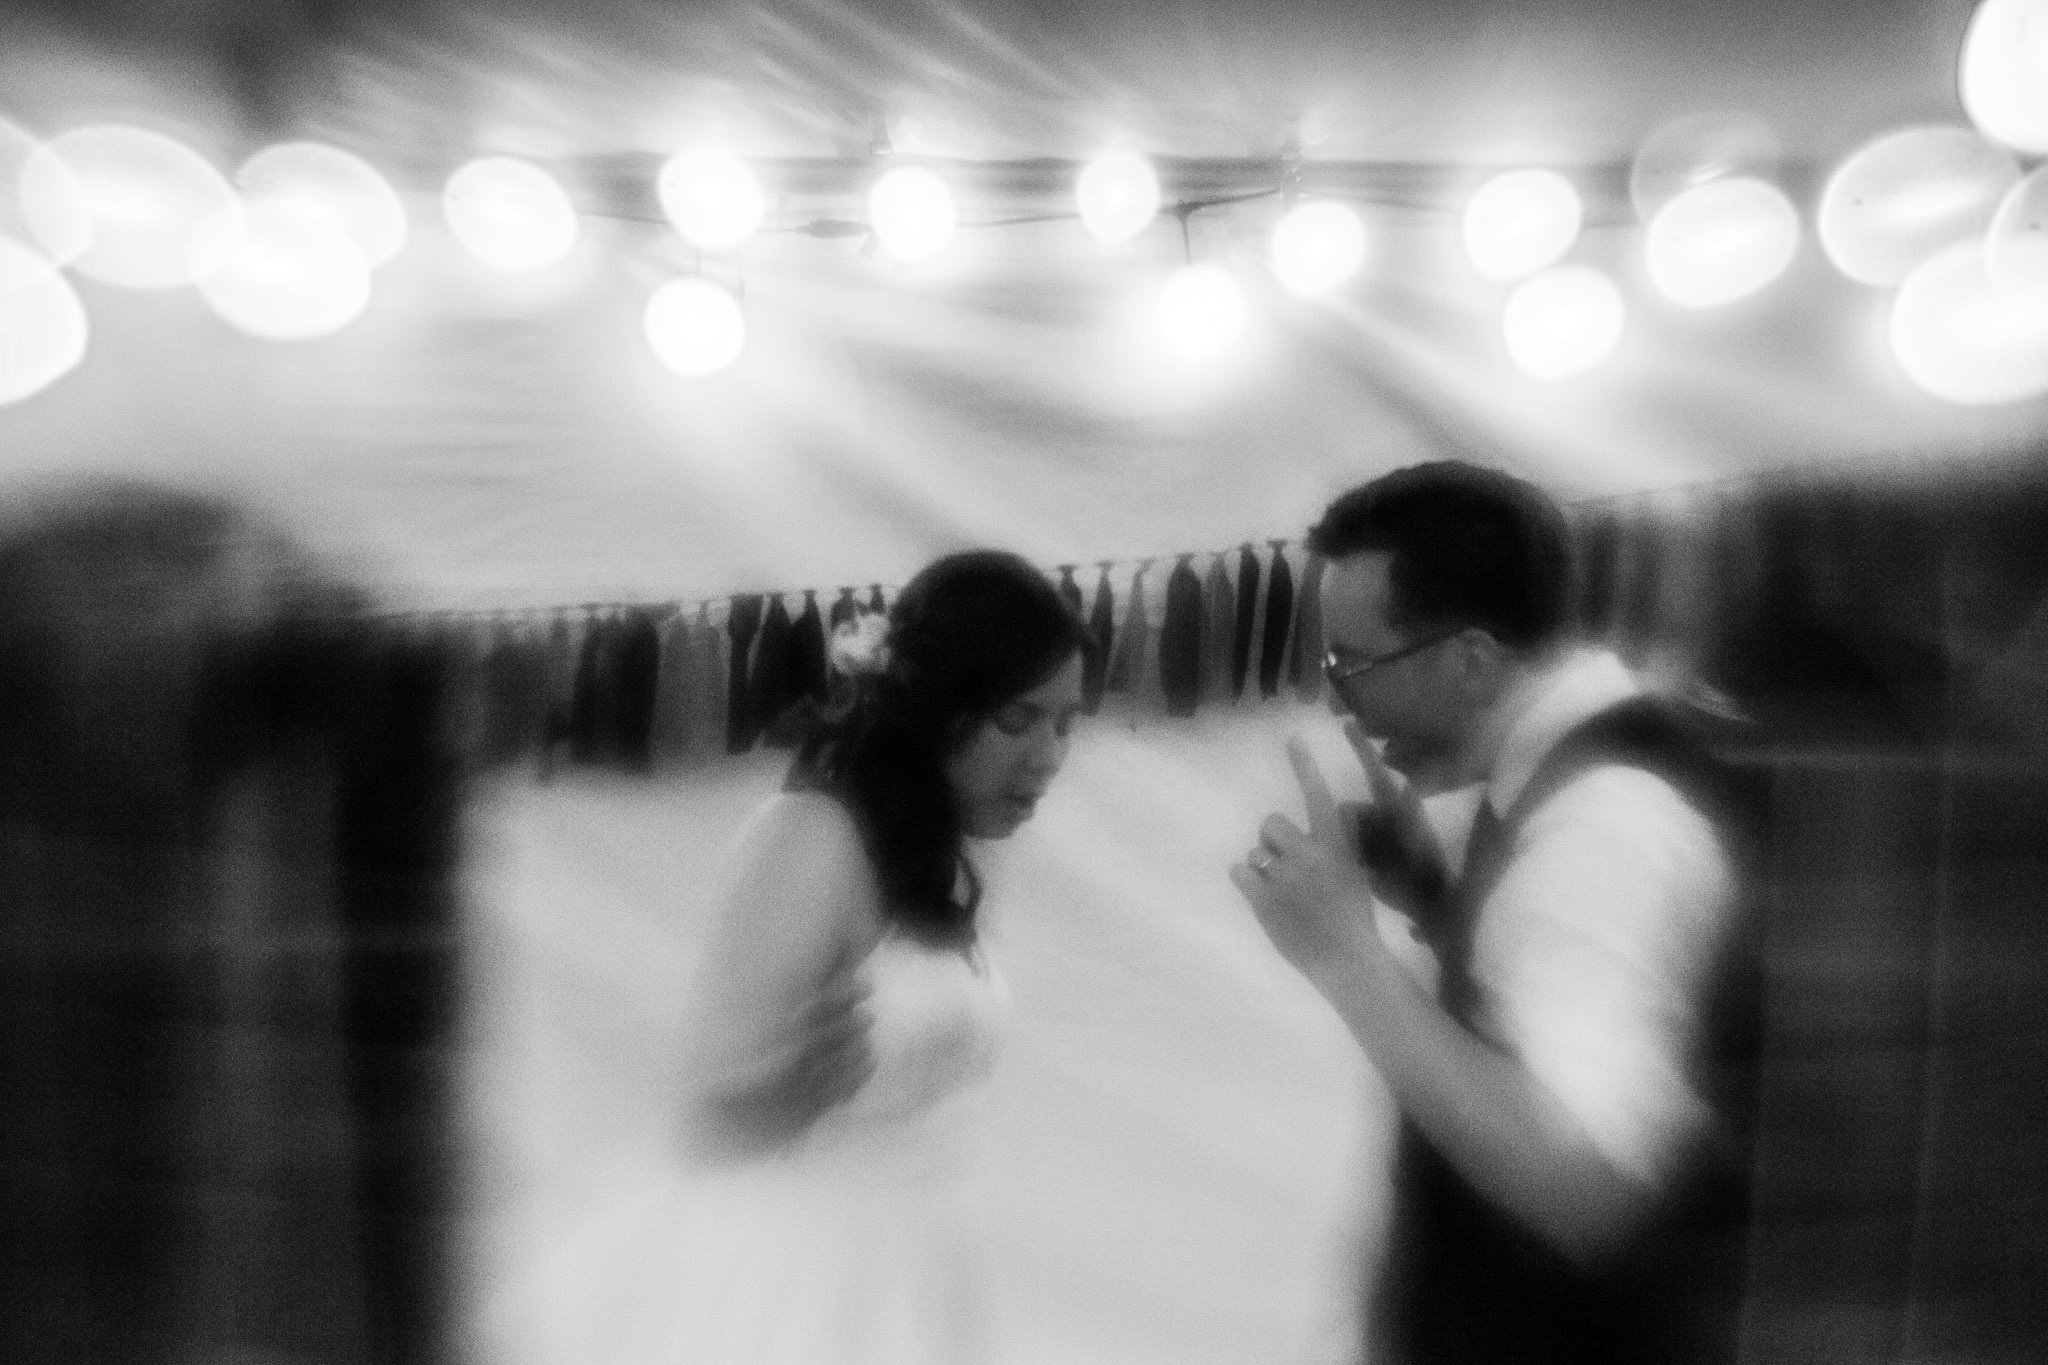 creative free lens image - bride and groom dancing.jpg